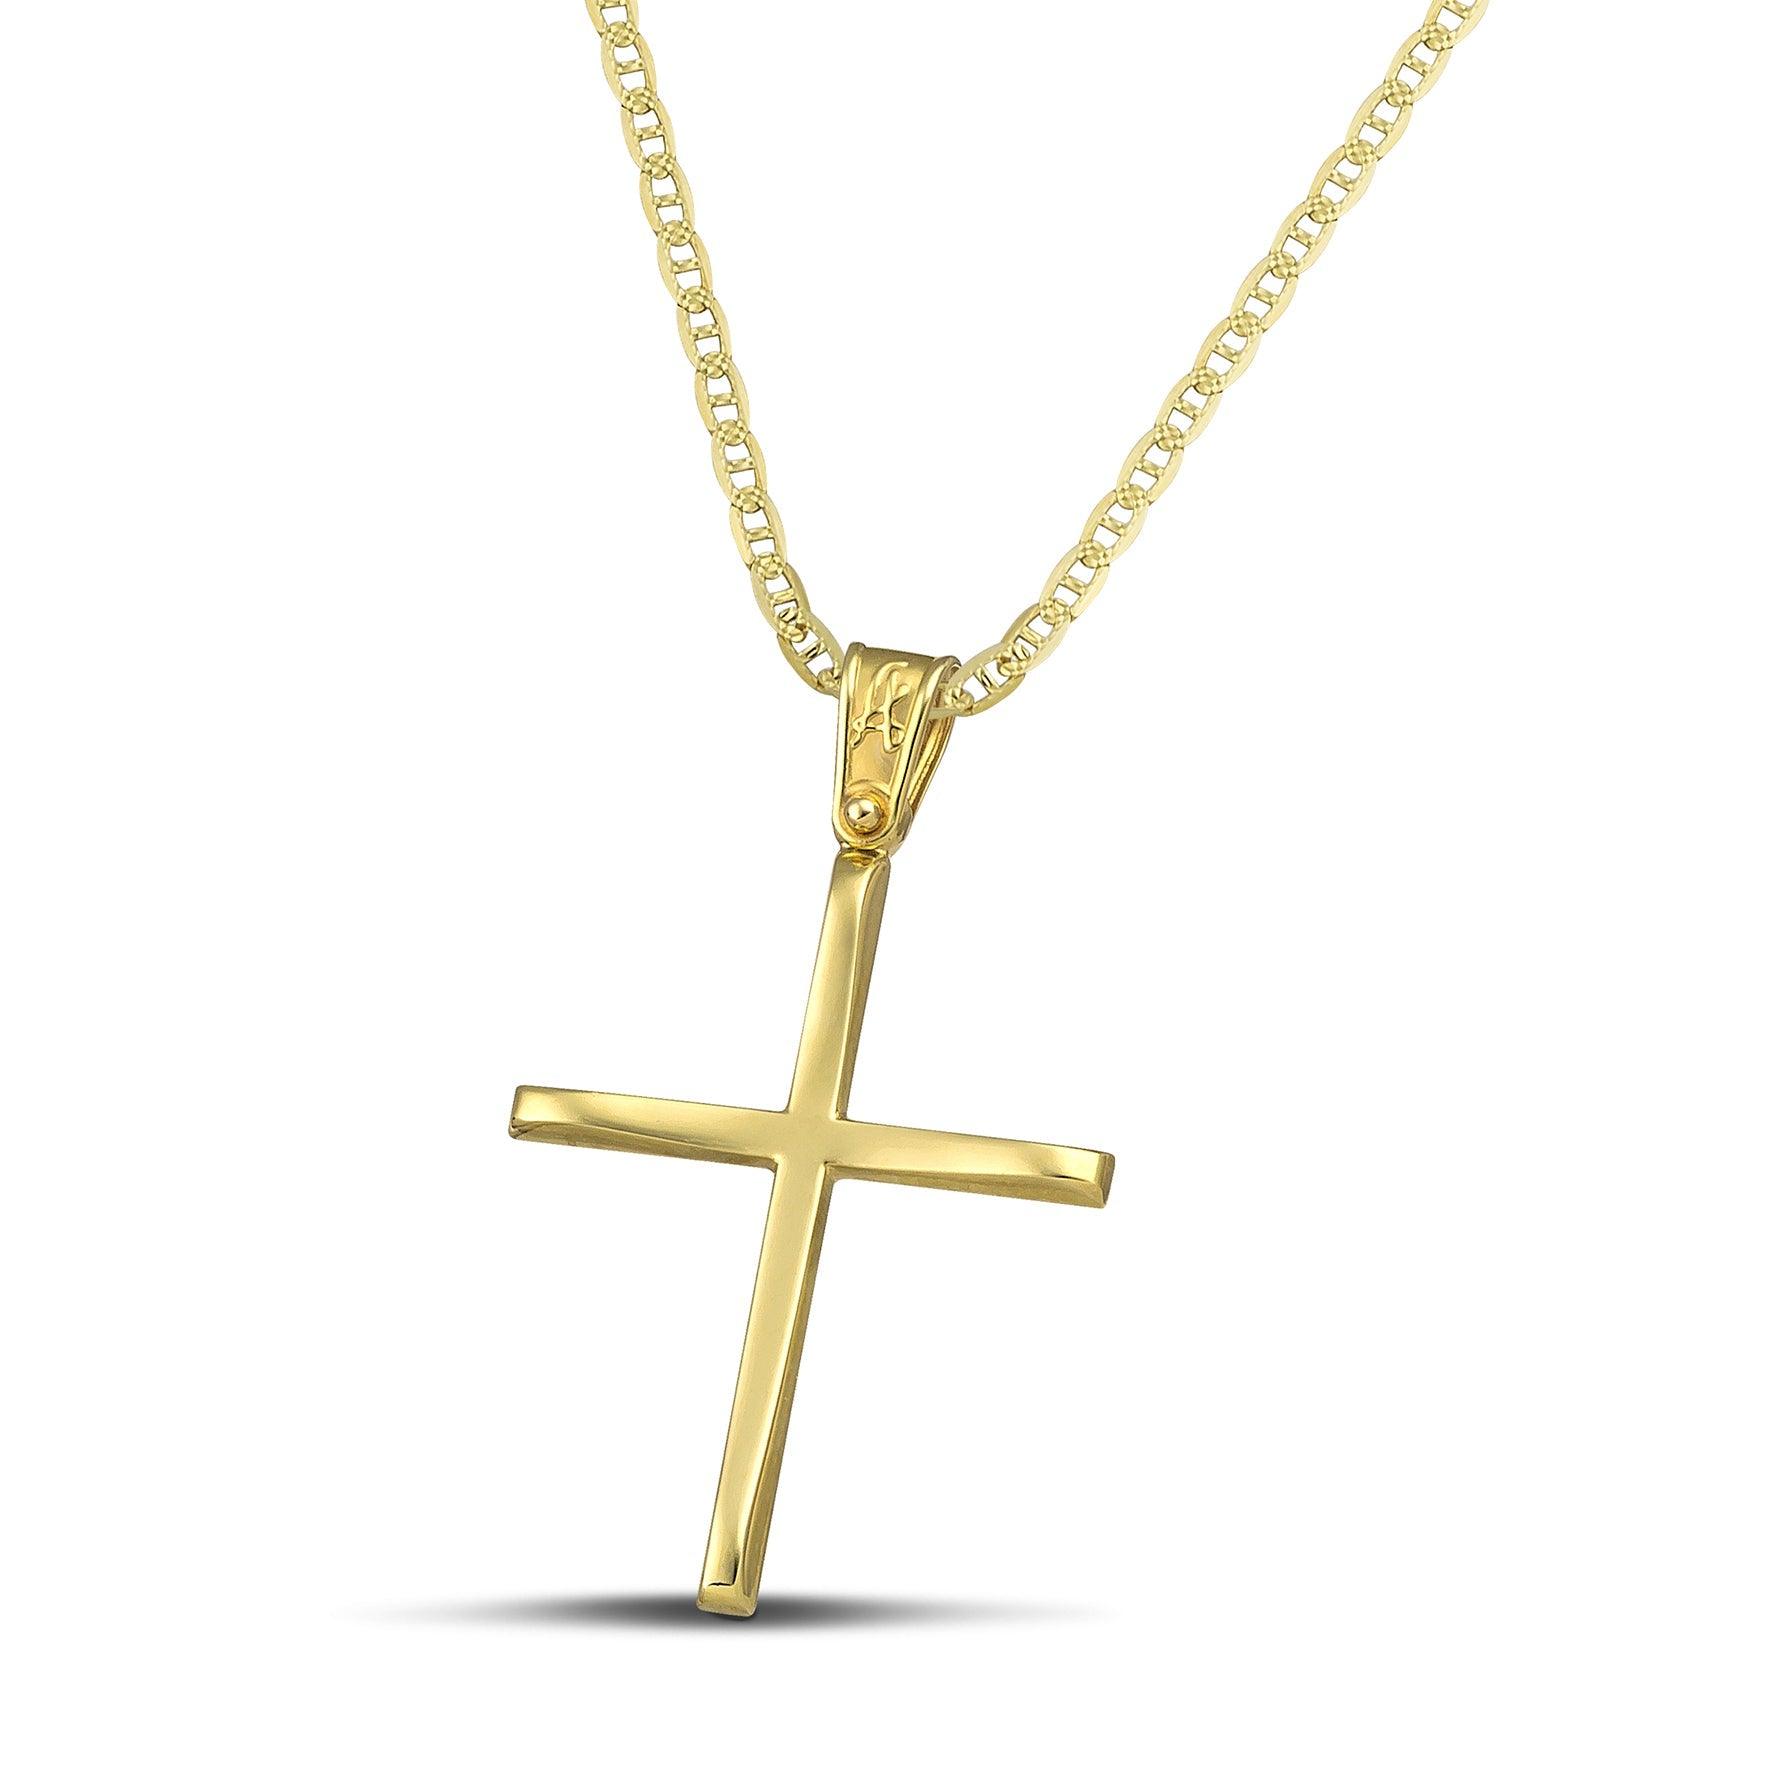 Χρυσός βαφτιστικός σταυρός Κ14, με κλασσικό σχεδιασμό. Γυναικείο χειροποίητο κόσμημα περασμένο σε «Θ» αλυσίδα.